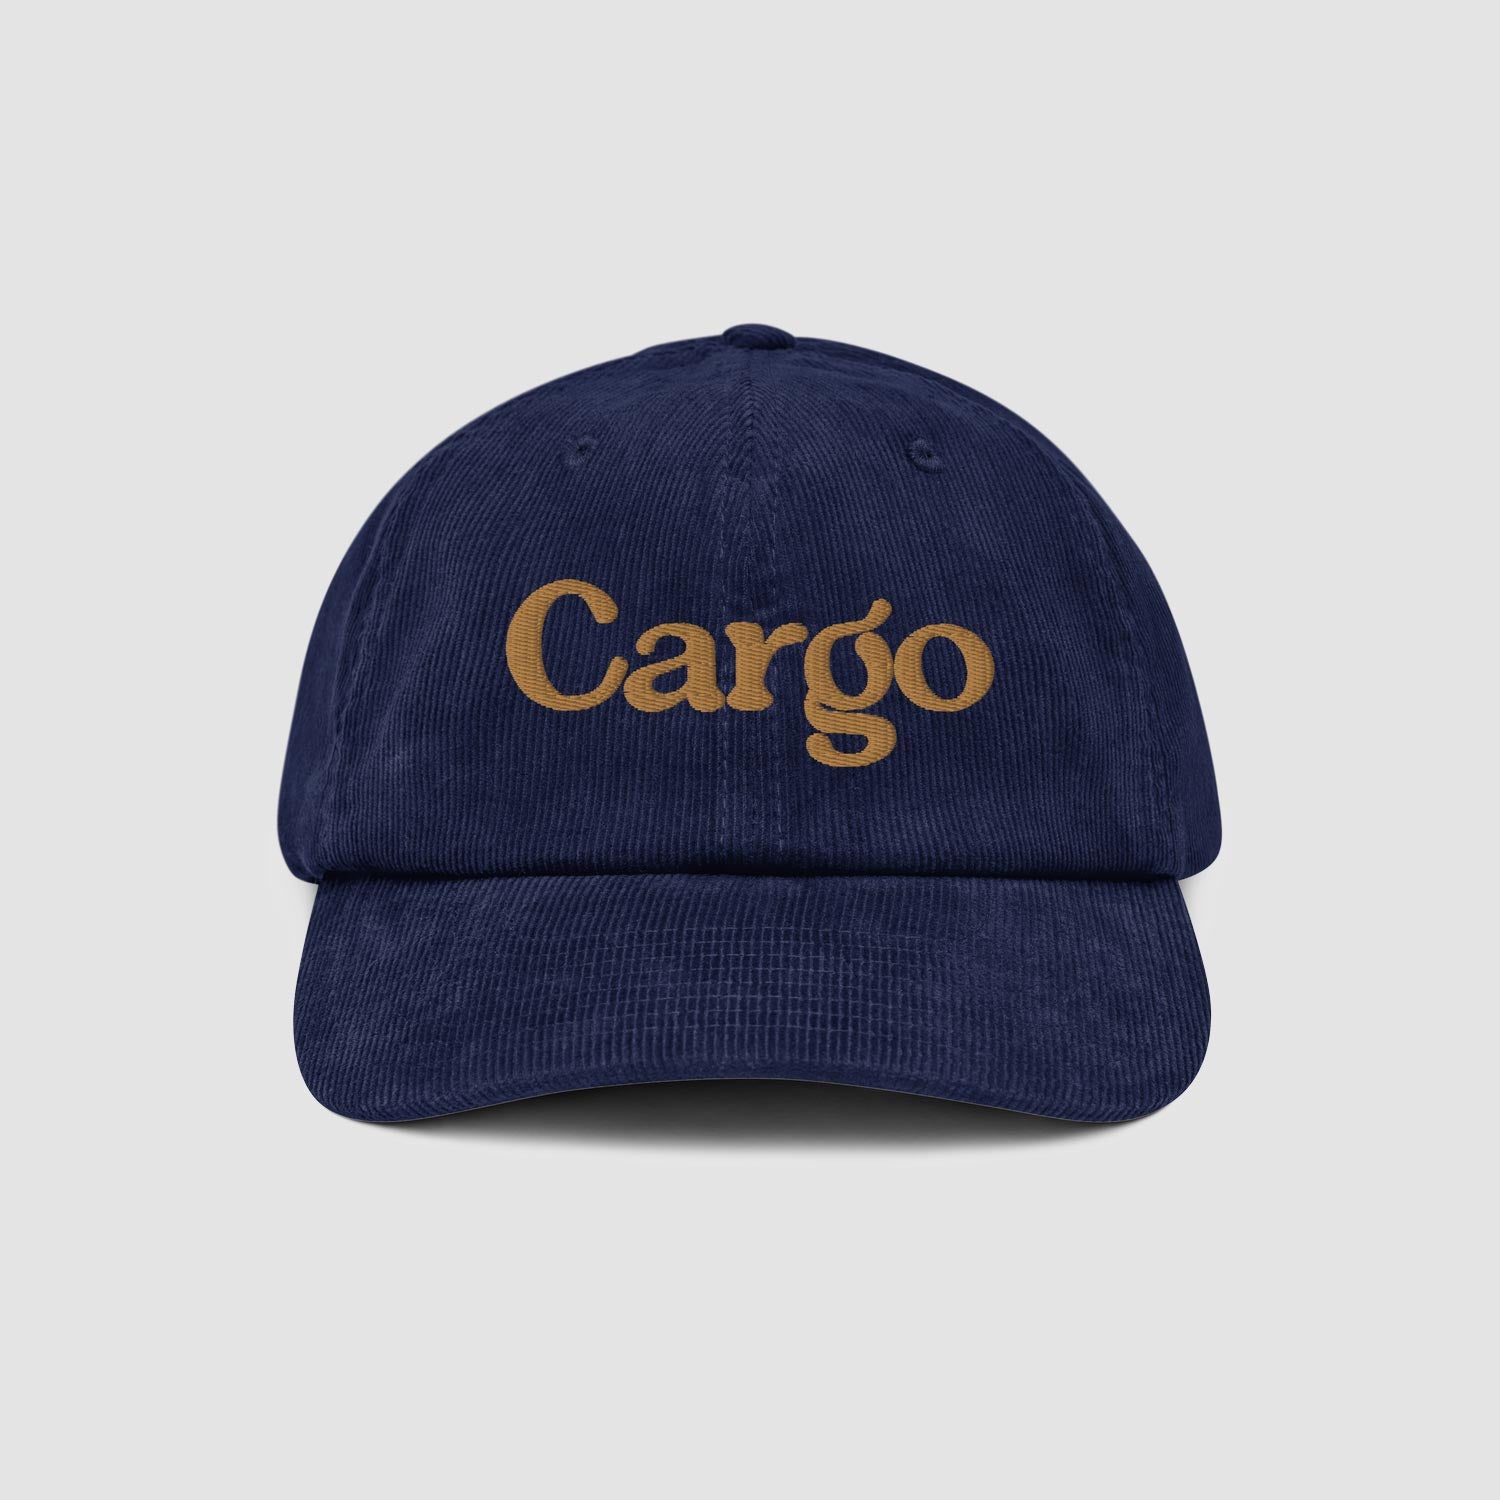 Cargo Brand Cap